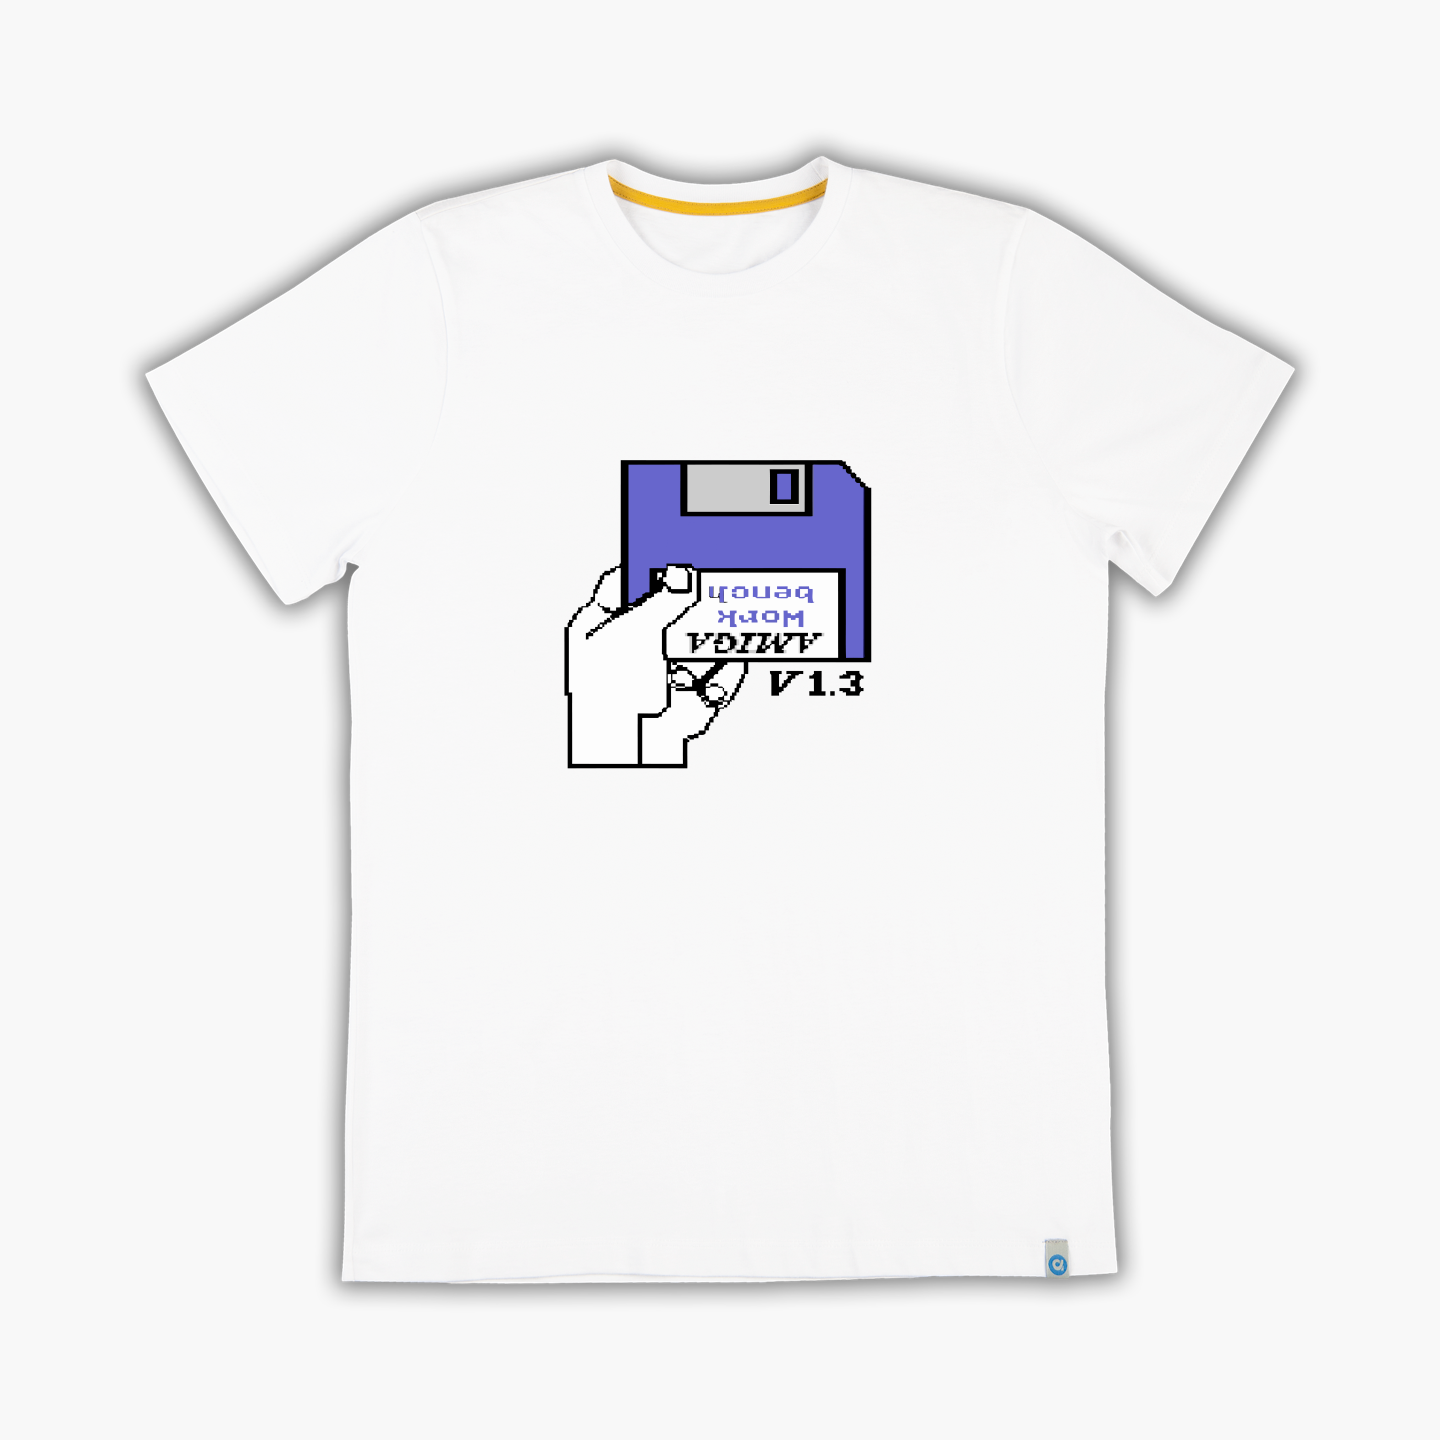 Commodore Amiga - Tişört